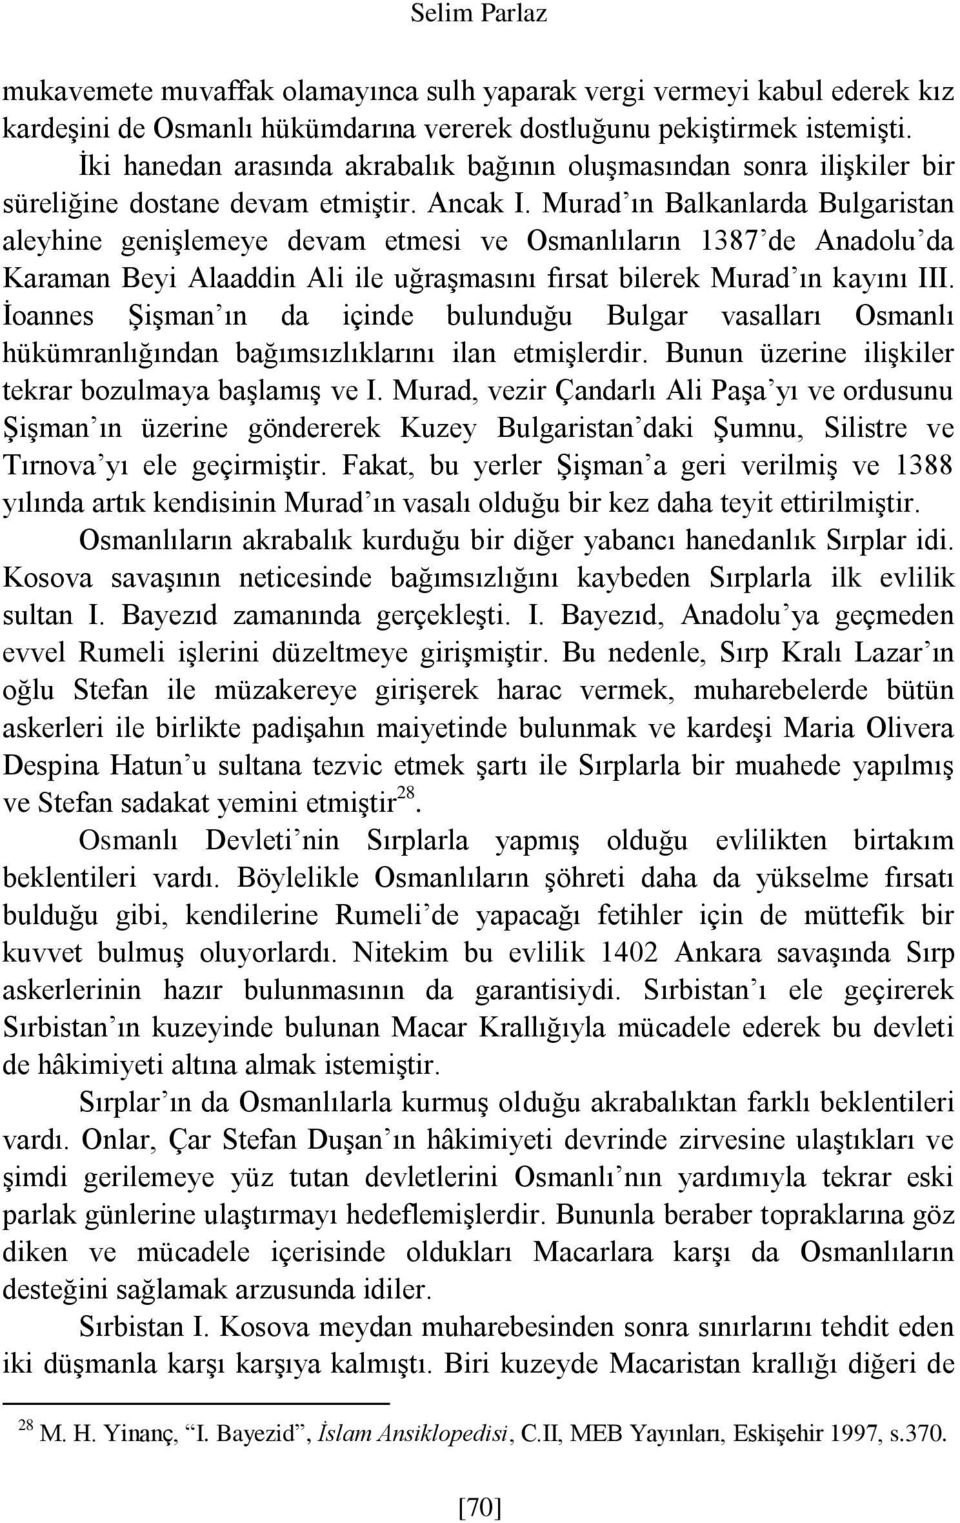 Murad ın Balkanlarda Bulgaristan aleyhine genişlemeye devam etmesi ve Osmanlıların 1387 de Anadolu da Karaman Beyi Alaaddin Ali ile uğraşmasını fırsat bilerek Murad ın kayını III.